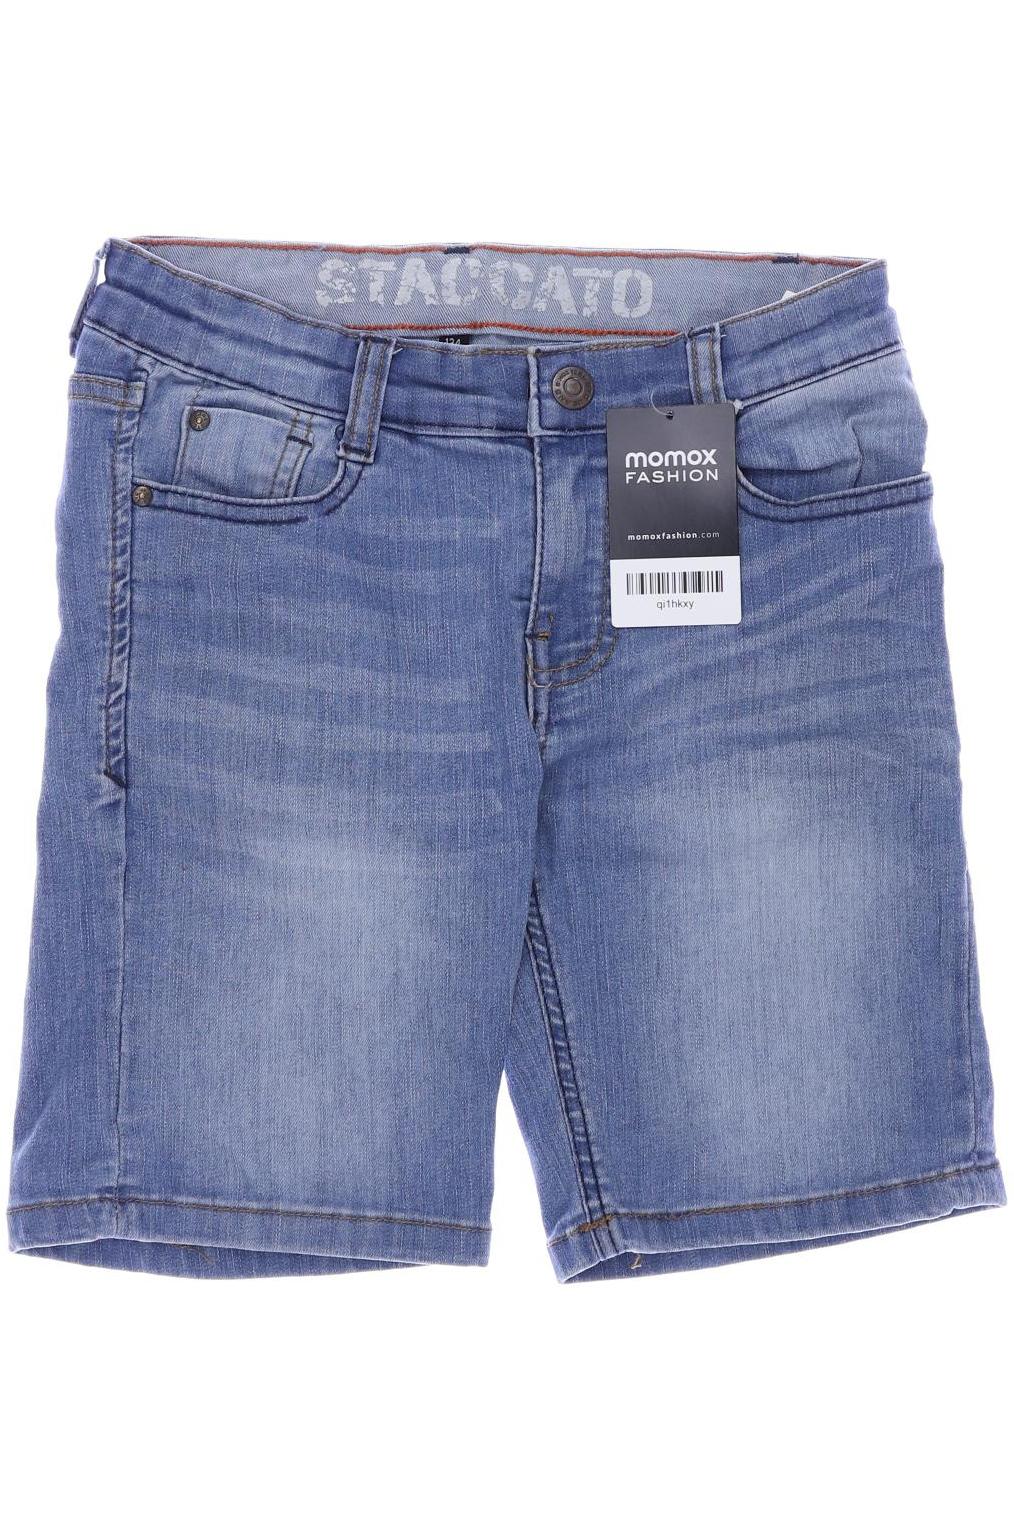 Staccato Jungen Shorts, blau von Staccato